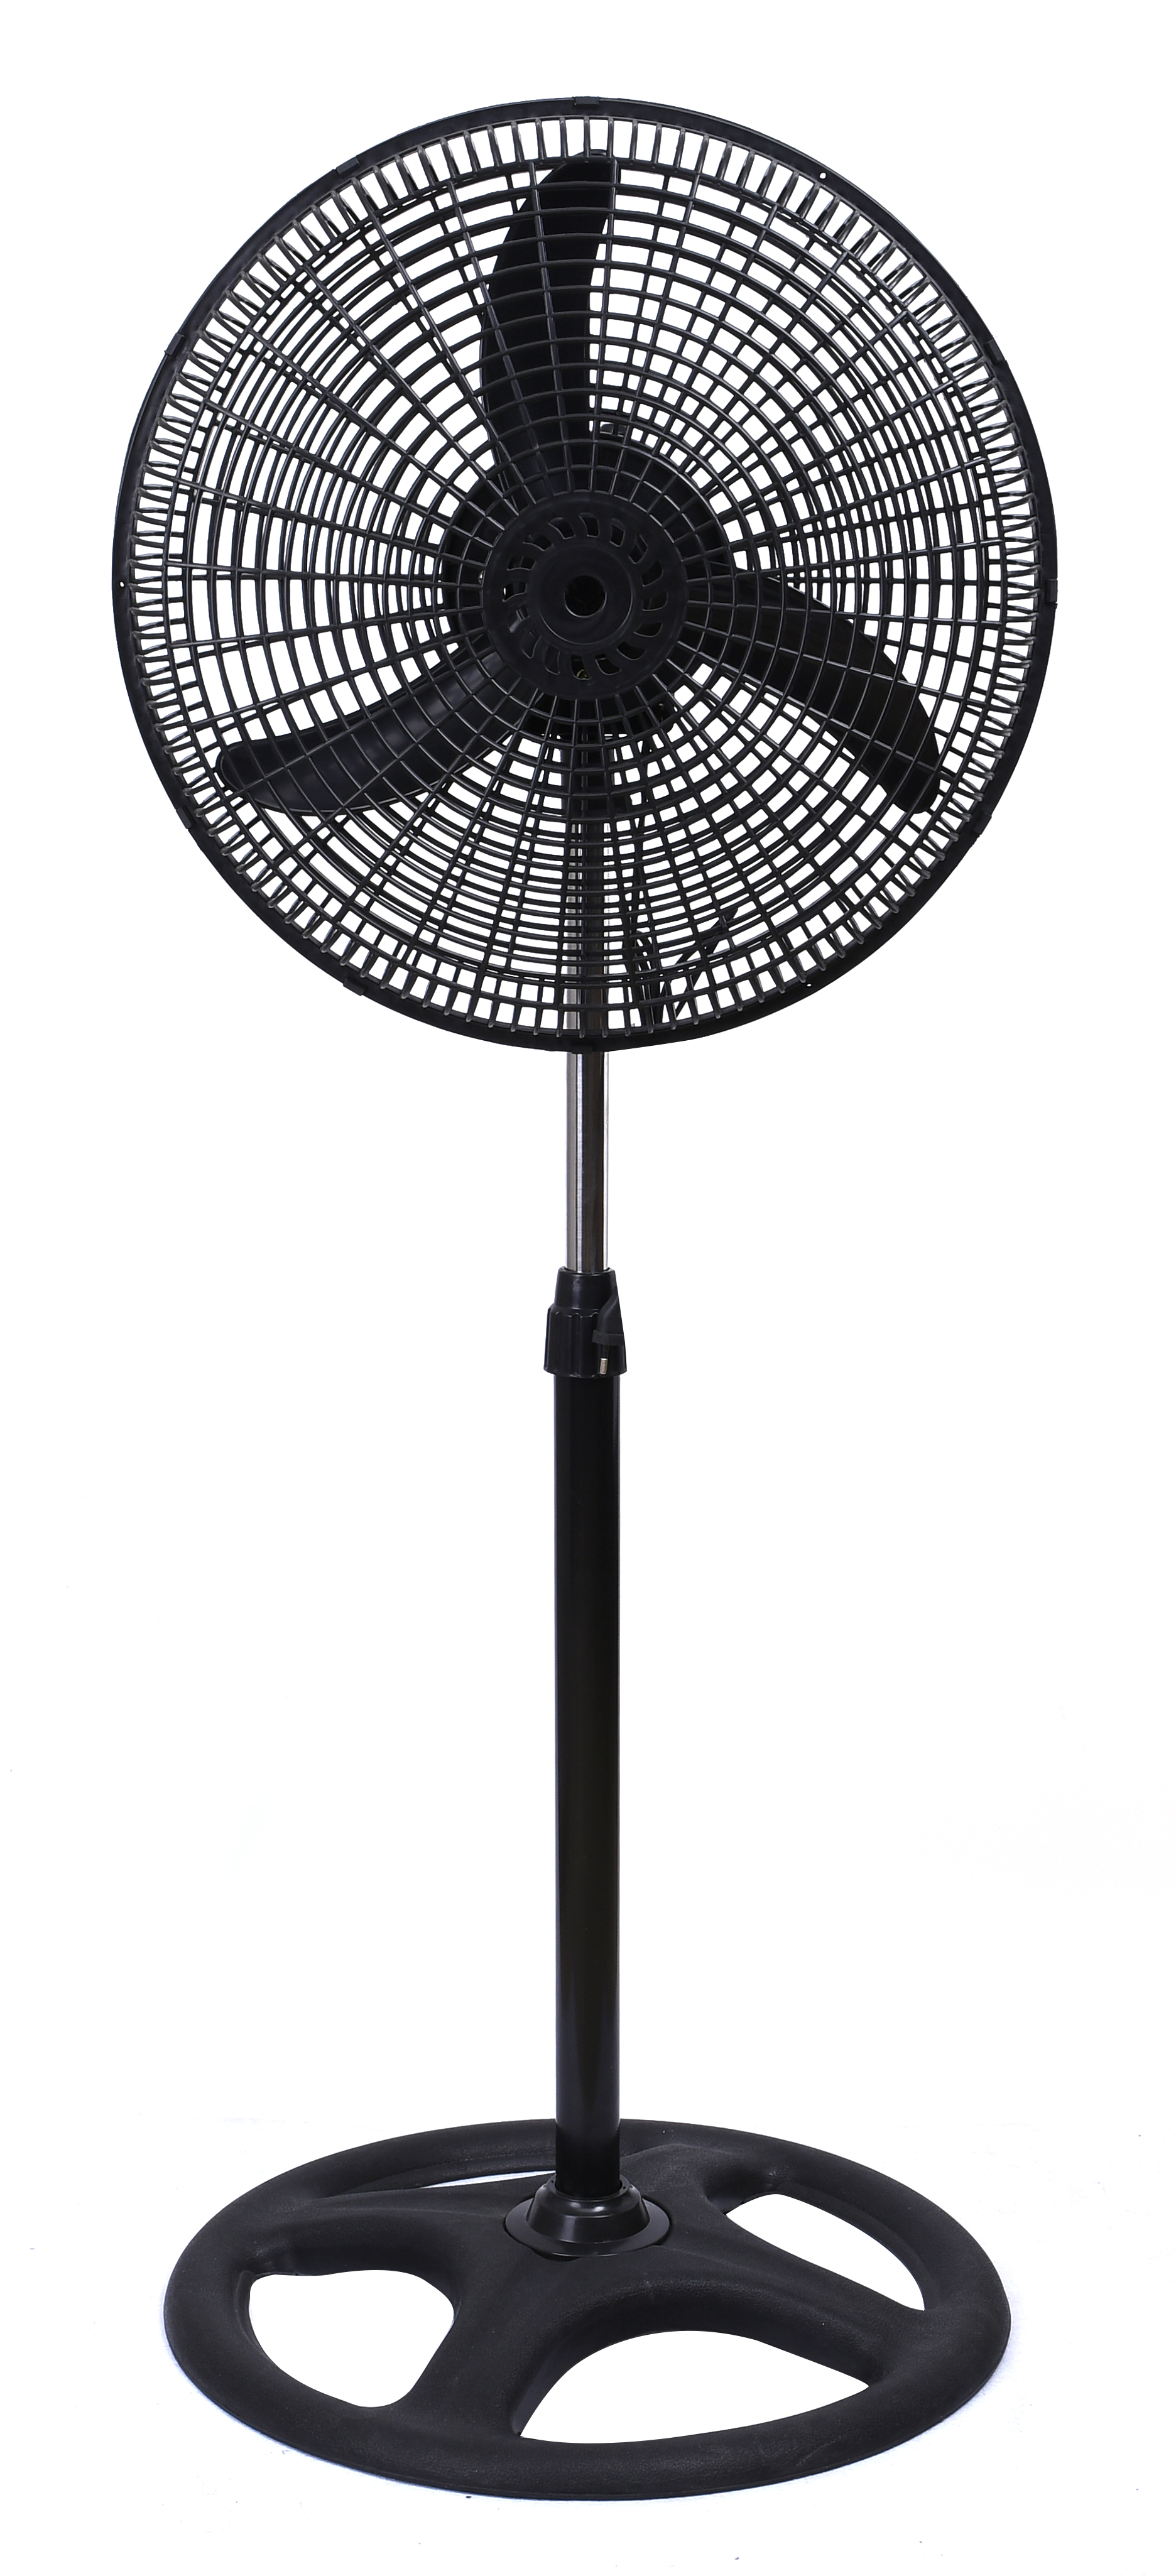 450mm Pedestal Fan (Black) SR-S1850 High Speed Pedestal Fan